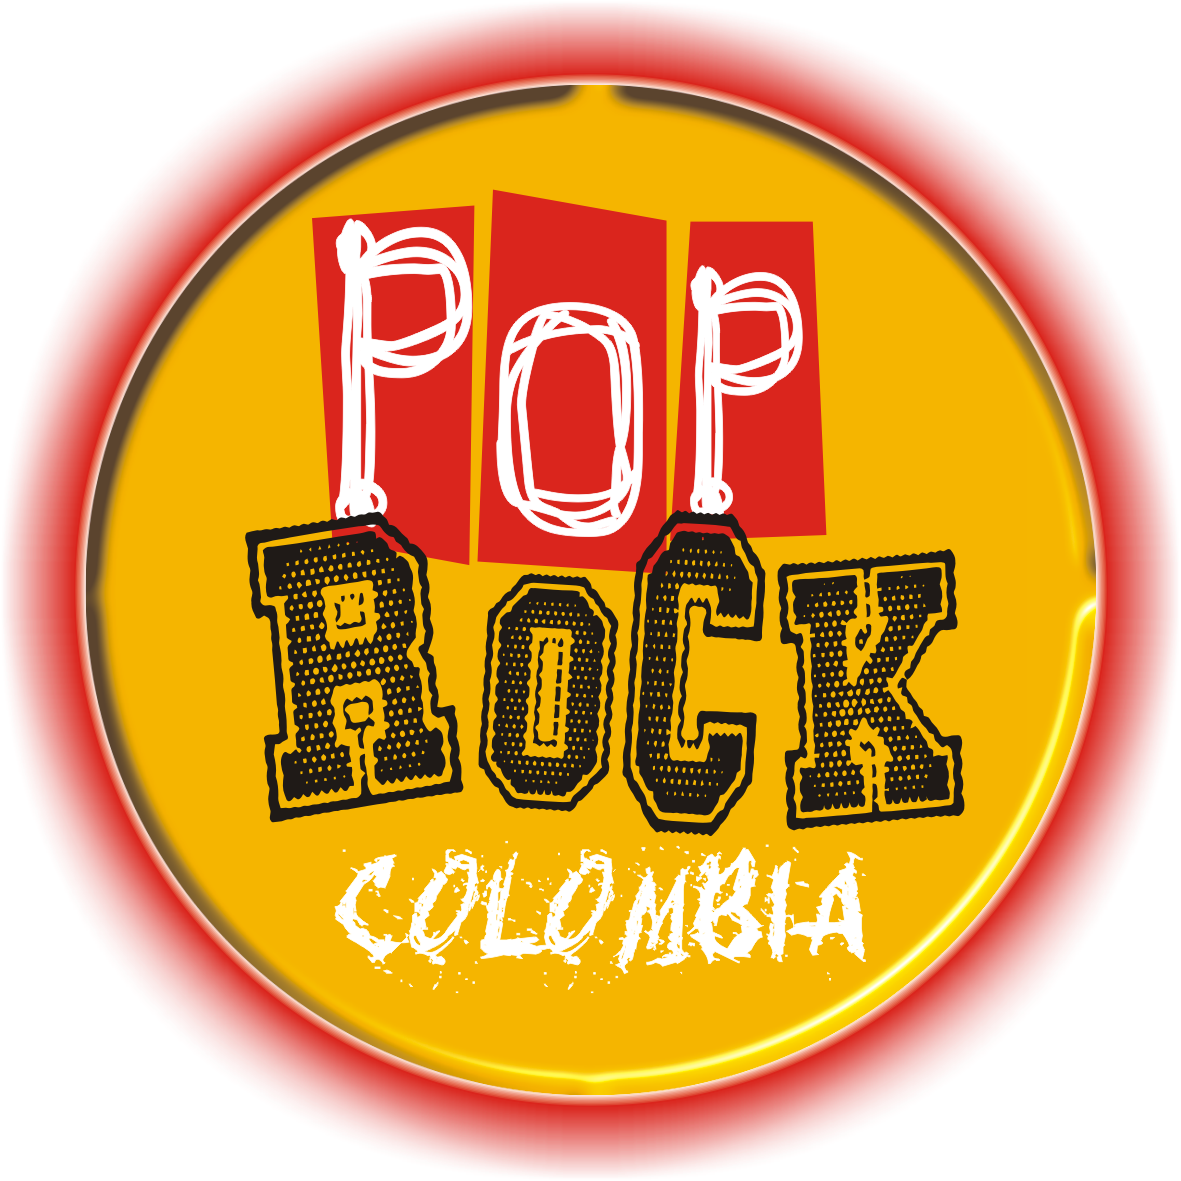 Colombia Pop Rock